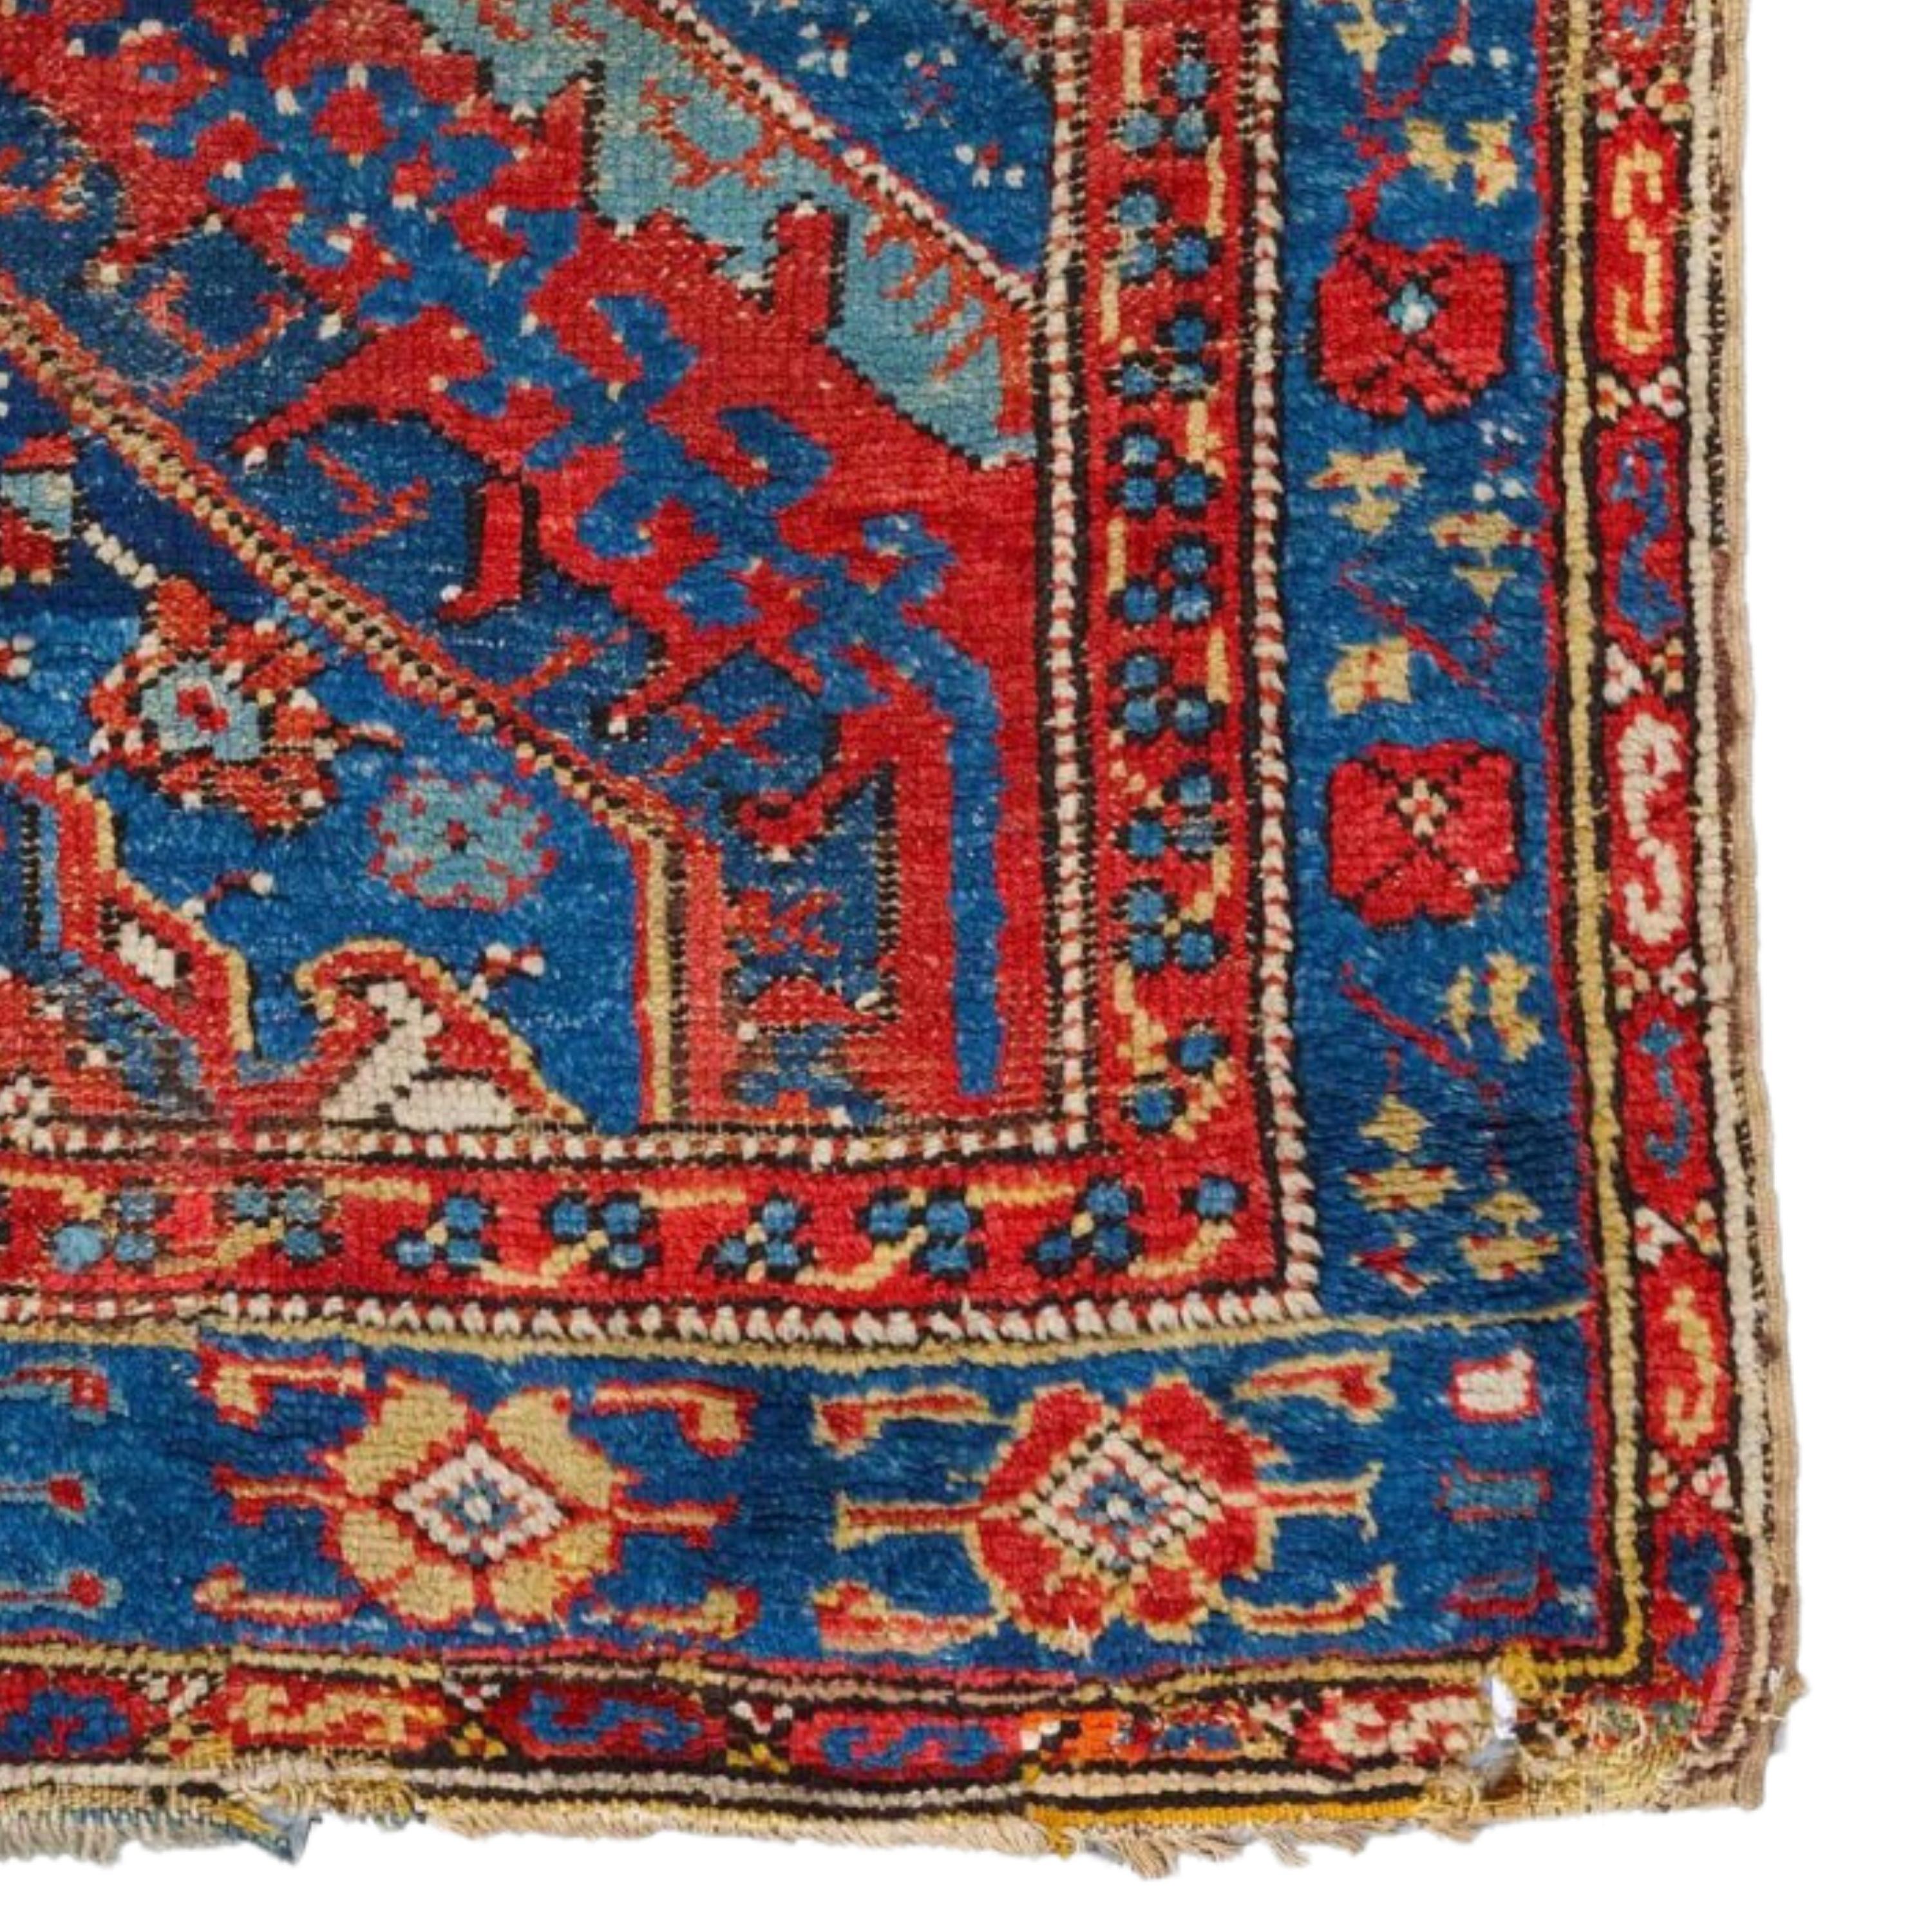 Wool Antique Ushak Rug - Early 18th Century Anatolian Ushak Rug, Antique Carpet For Sale